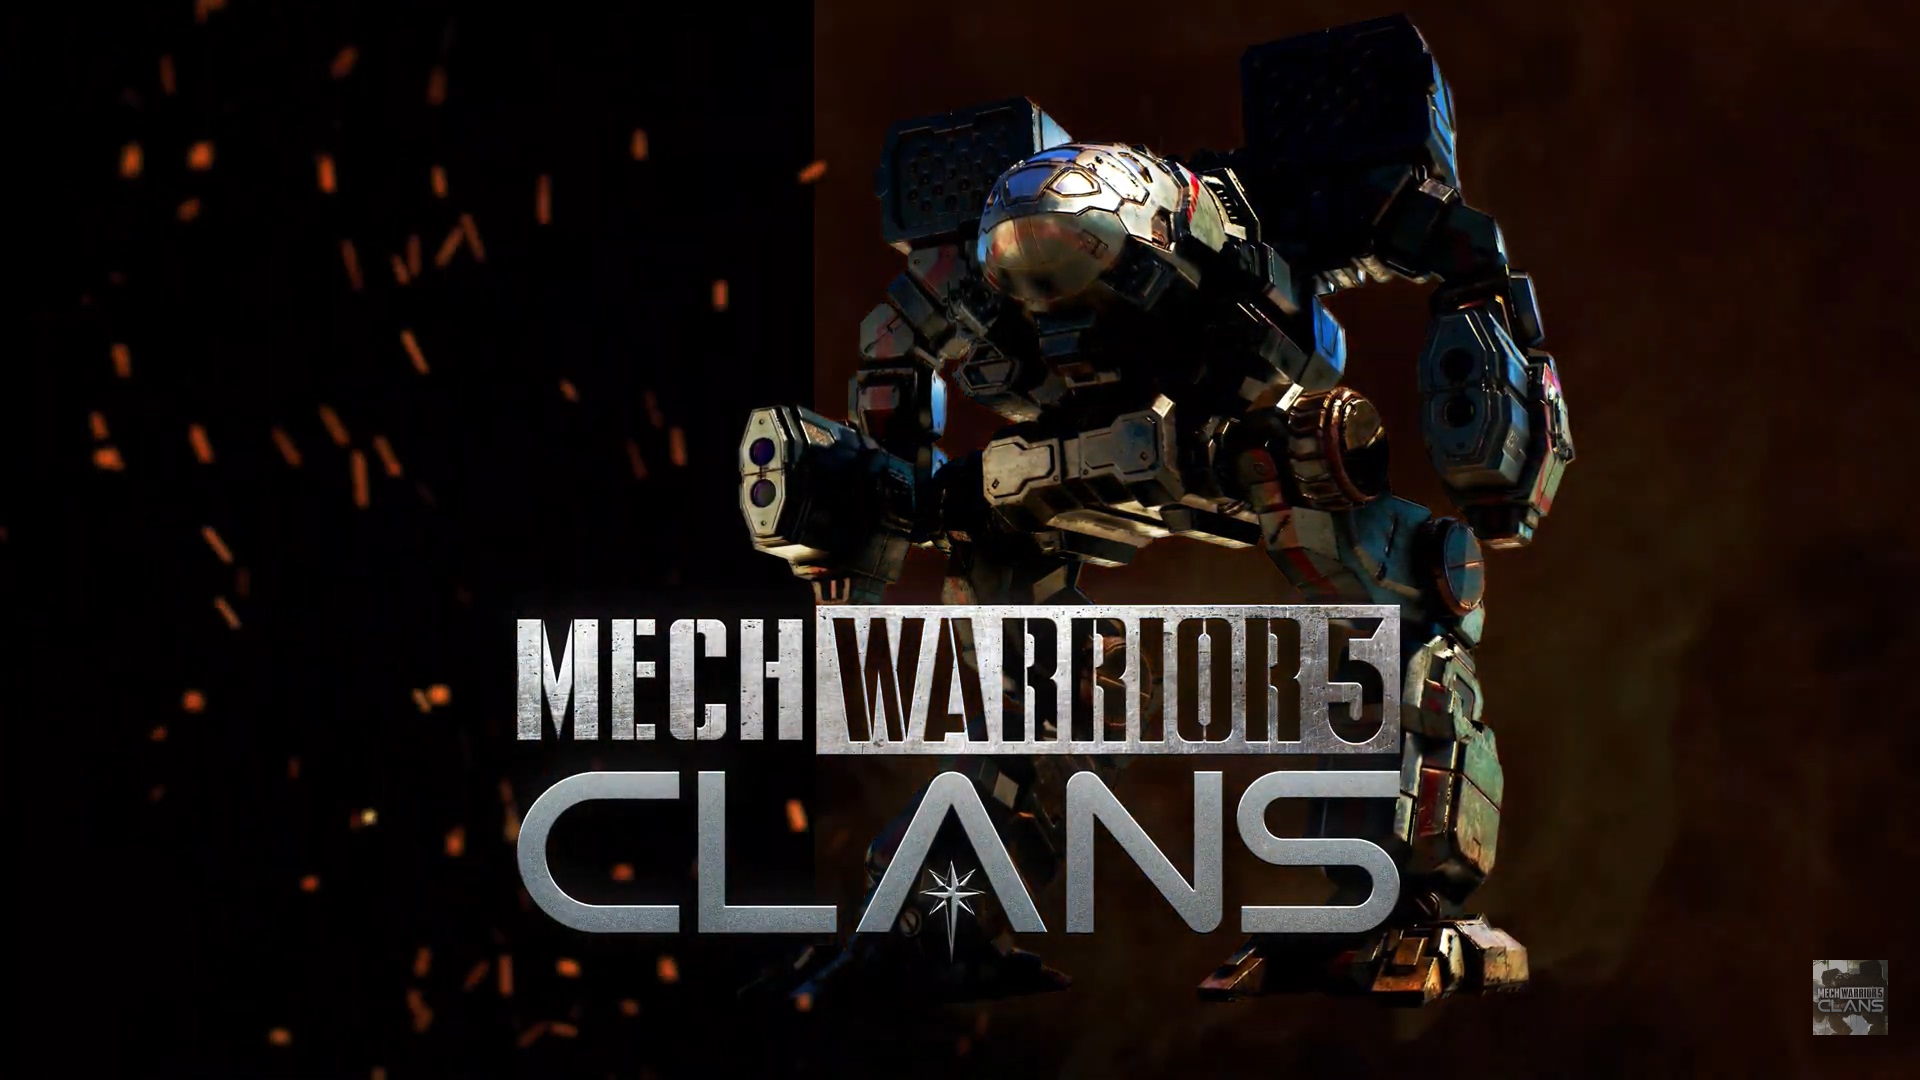 New MechWarrior 5: Mercenaries Trailer Reveals Crossplay Features